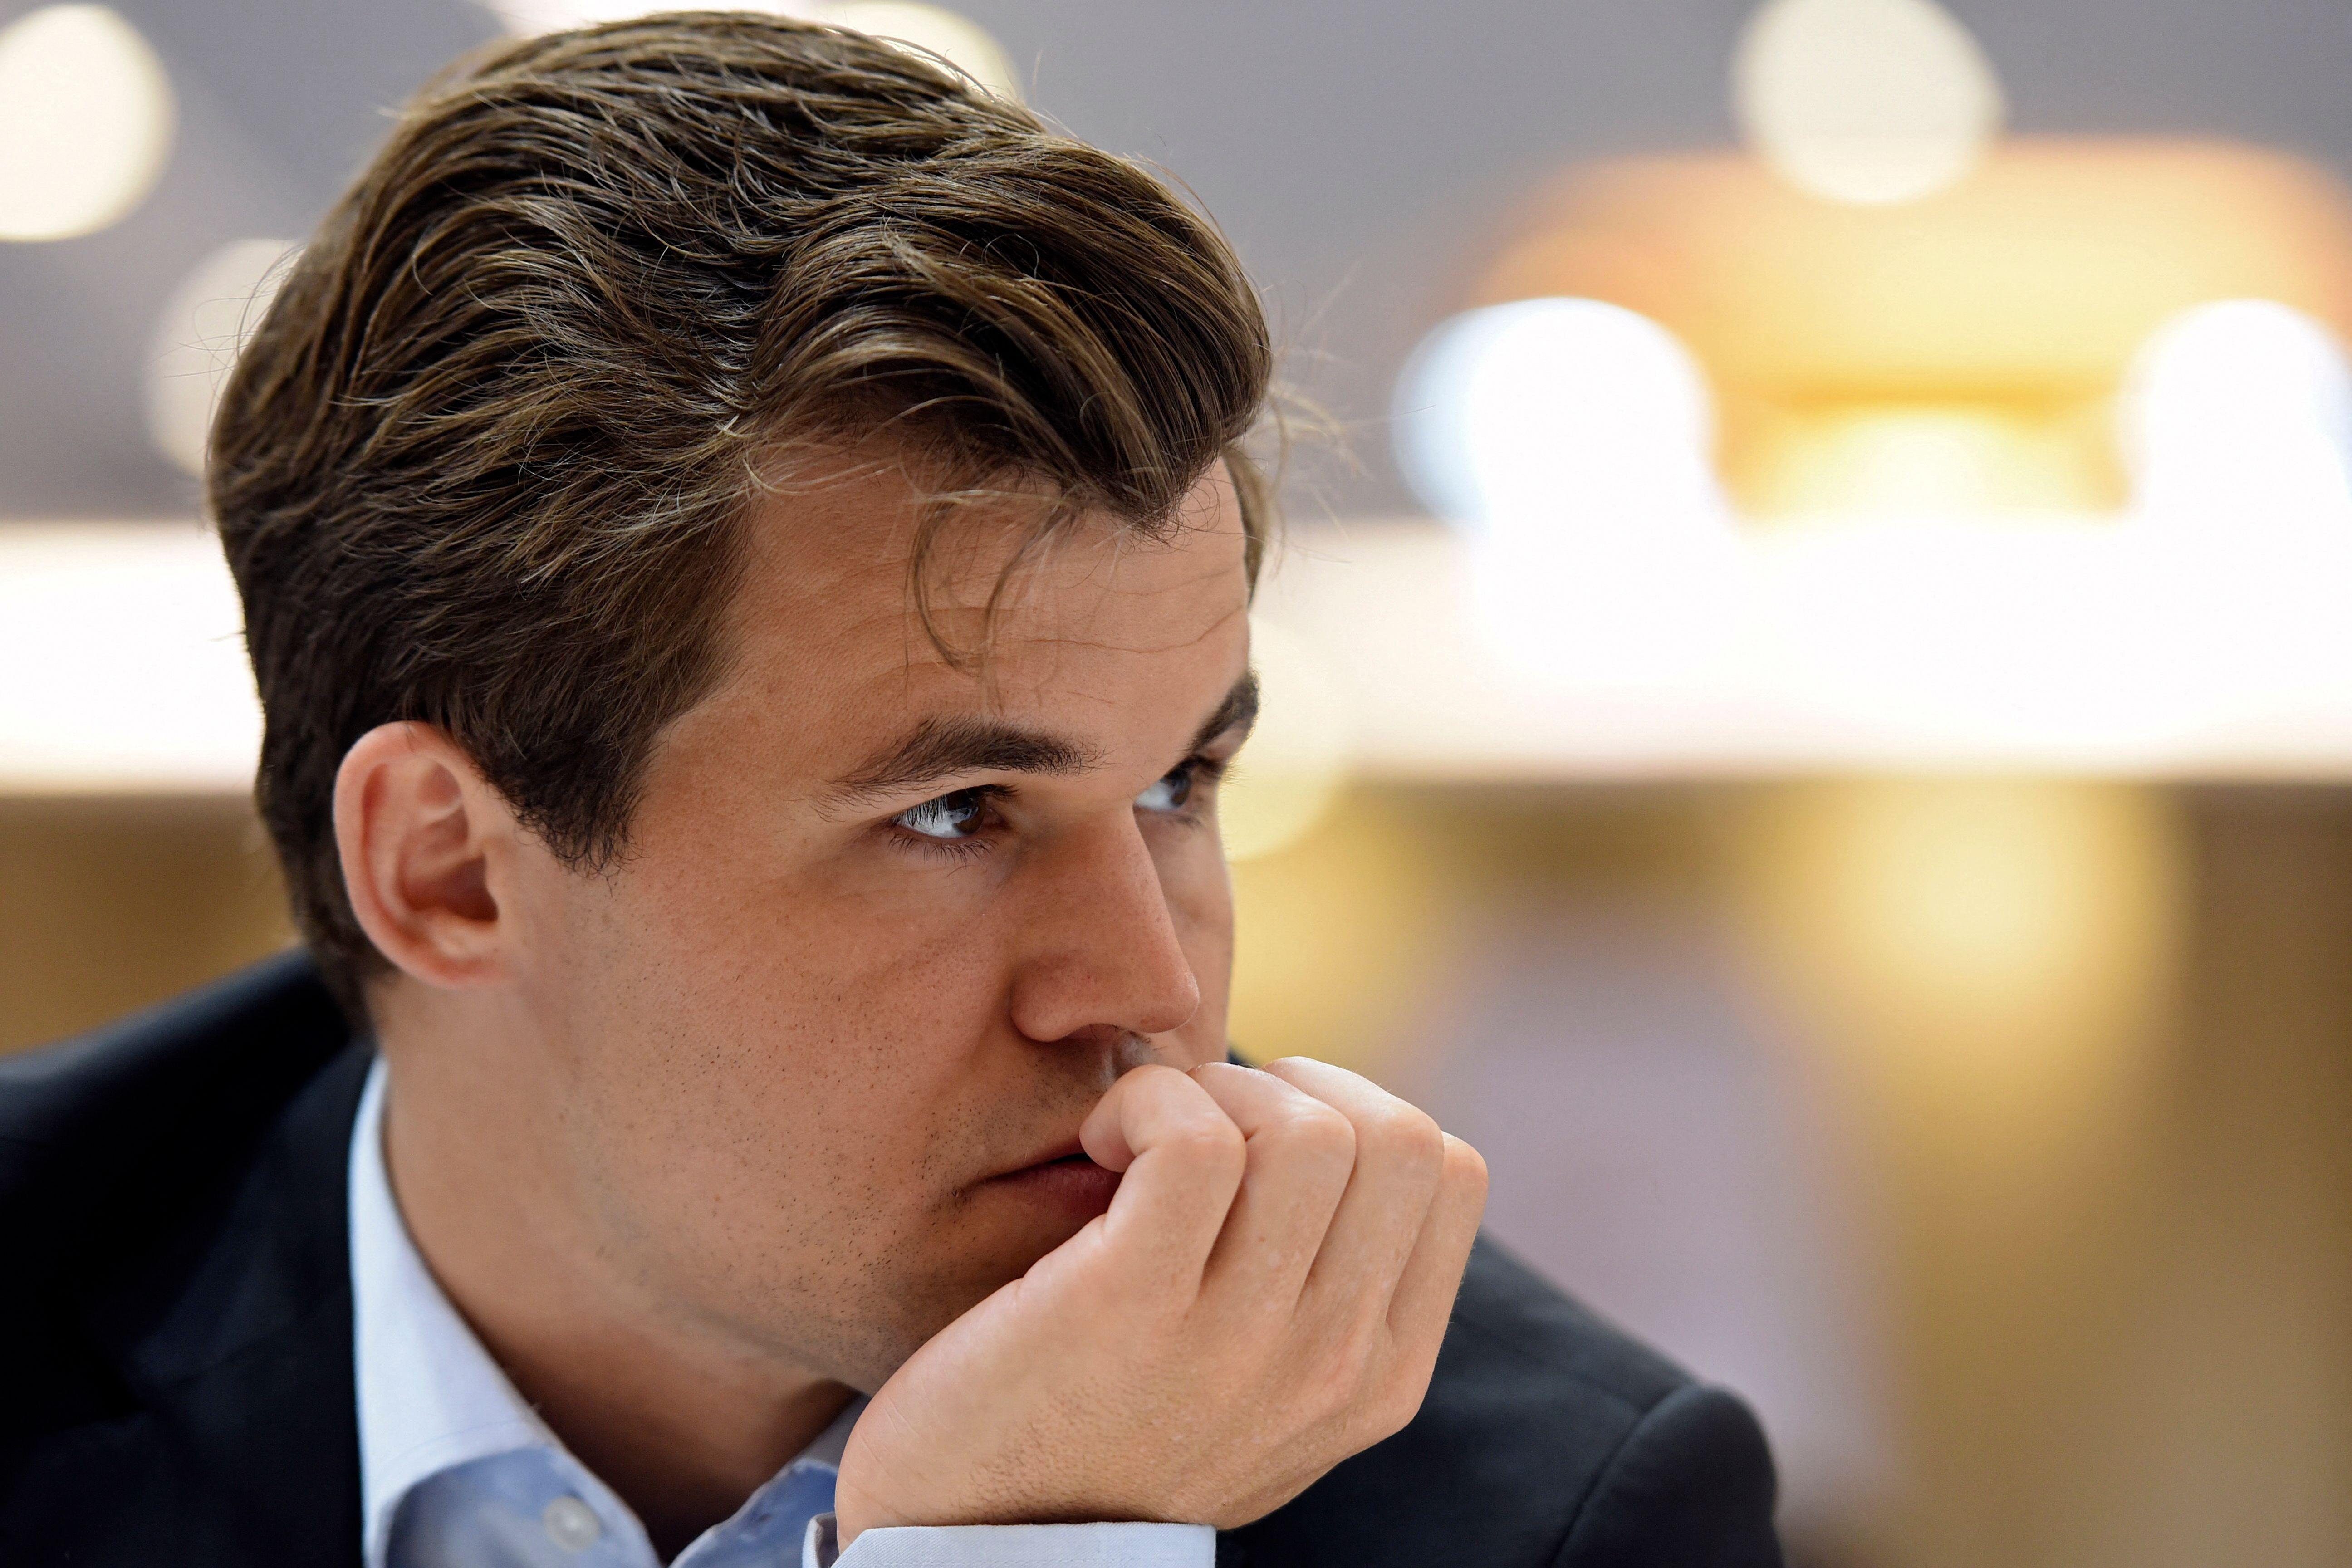 Ele derrotou Magnus Carlsen, número um mundial e cinco vezes